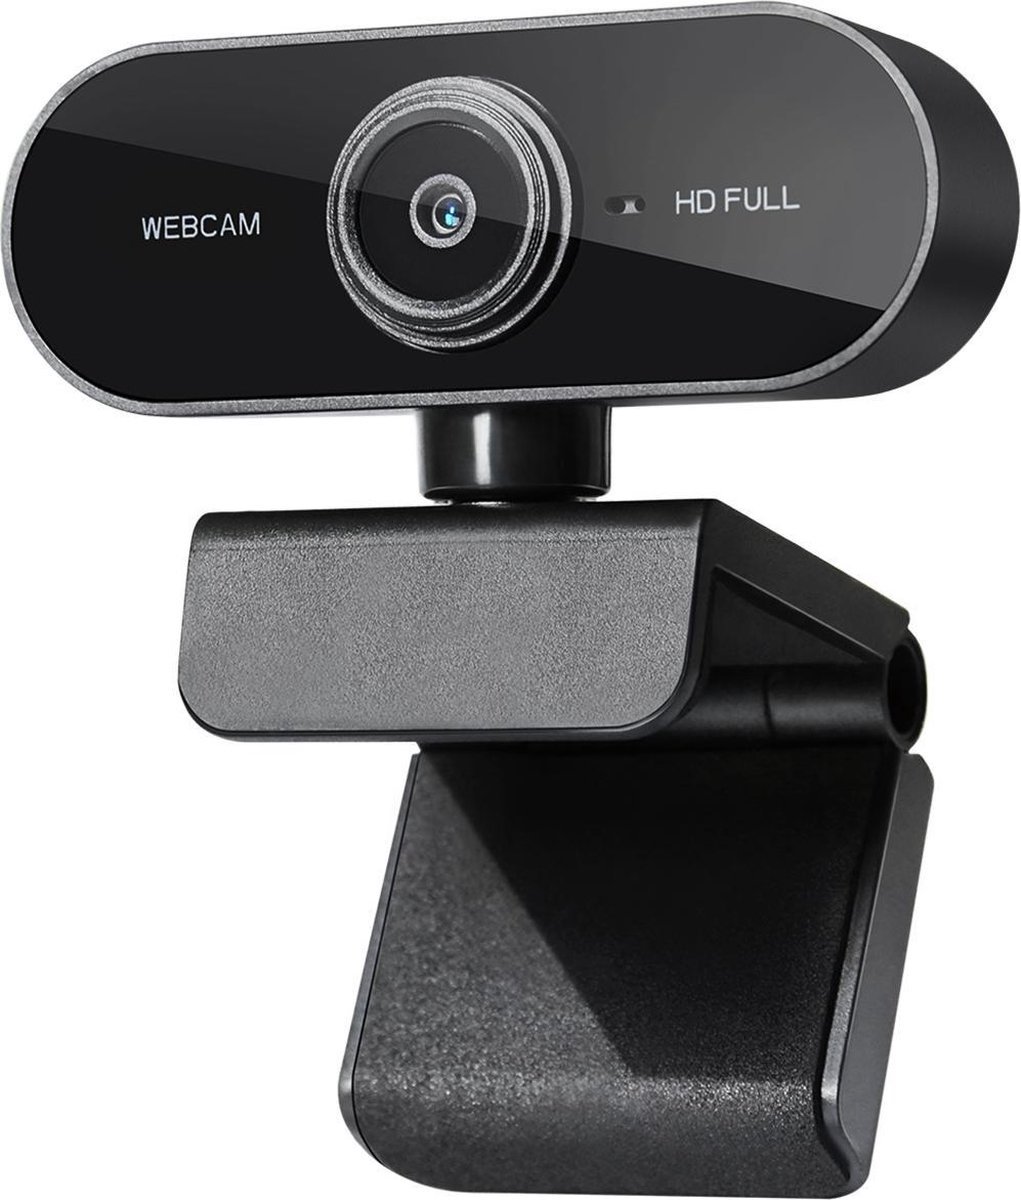 Parya Official - Webcam voor PC - Met ingebouwde microfoon - Full HD 1080P